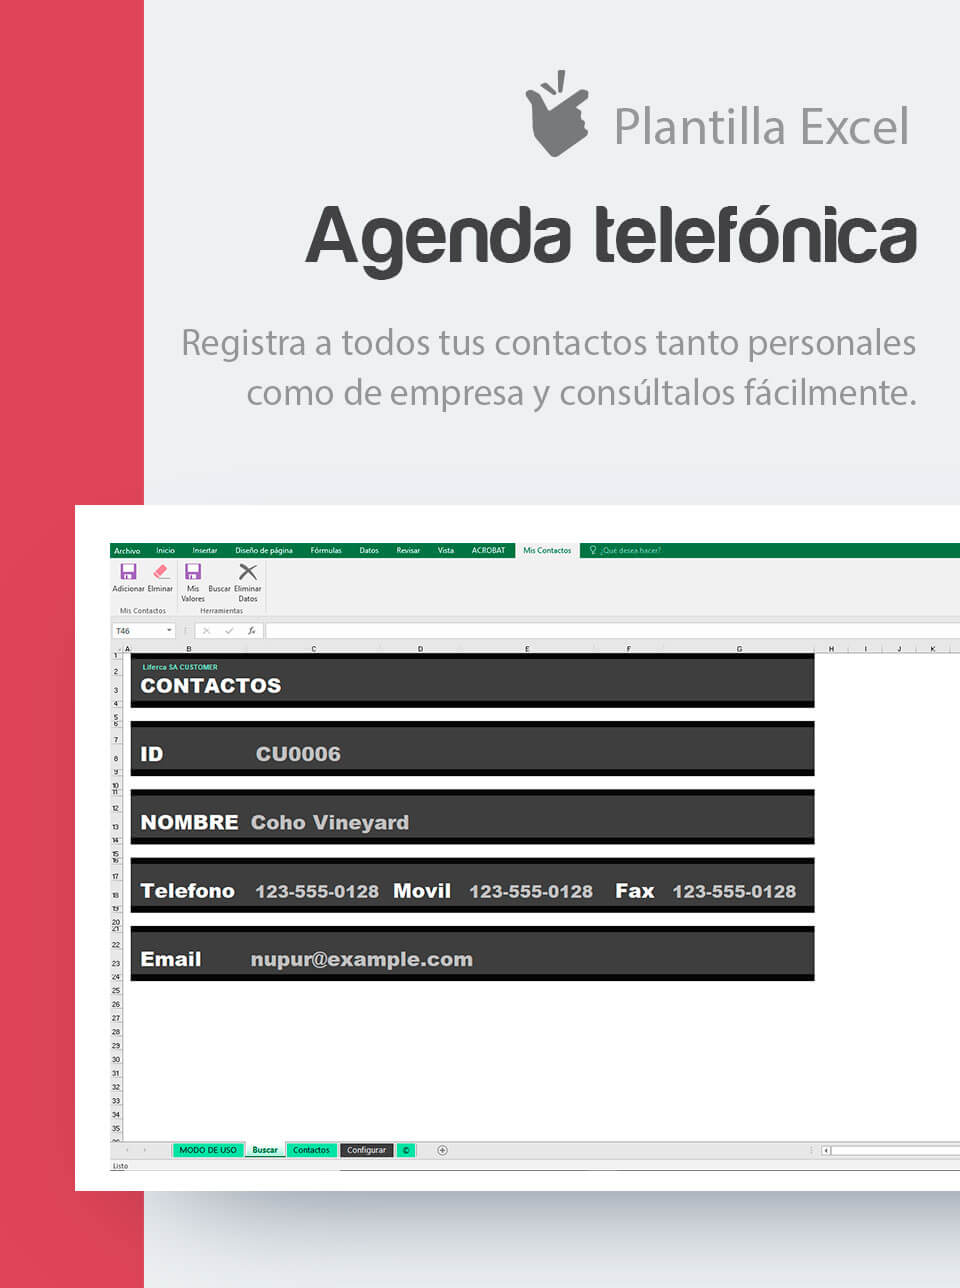 Plantilla Agenda Telefónica | Plantilla empresarial listin de contactos